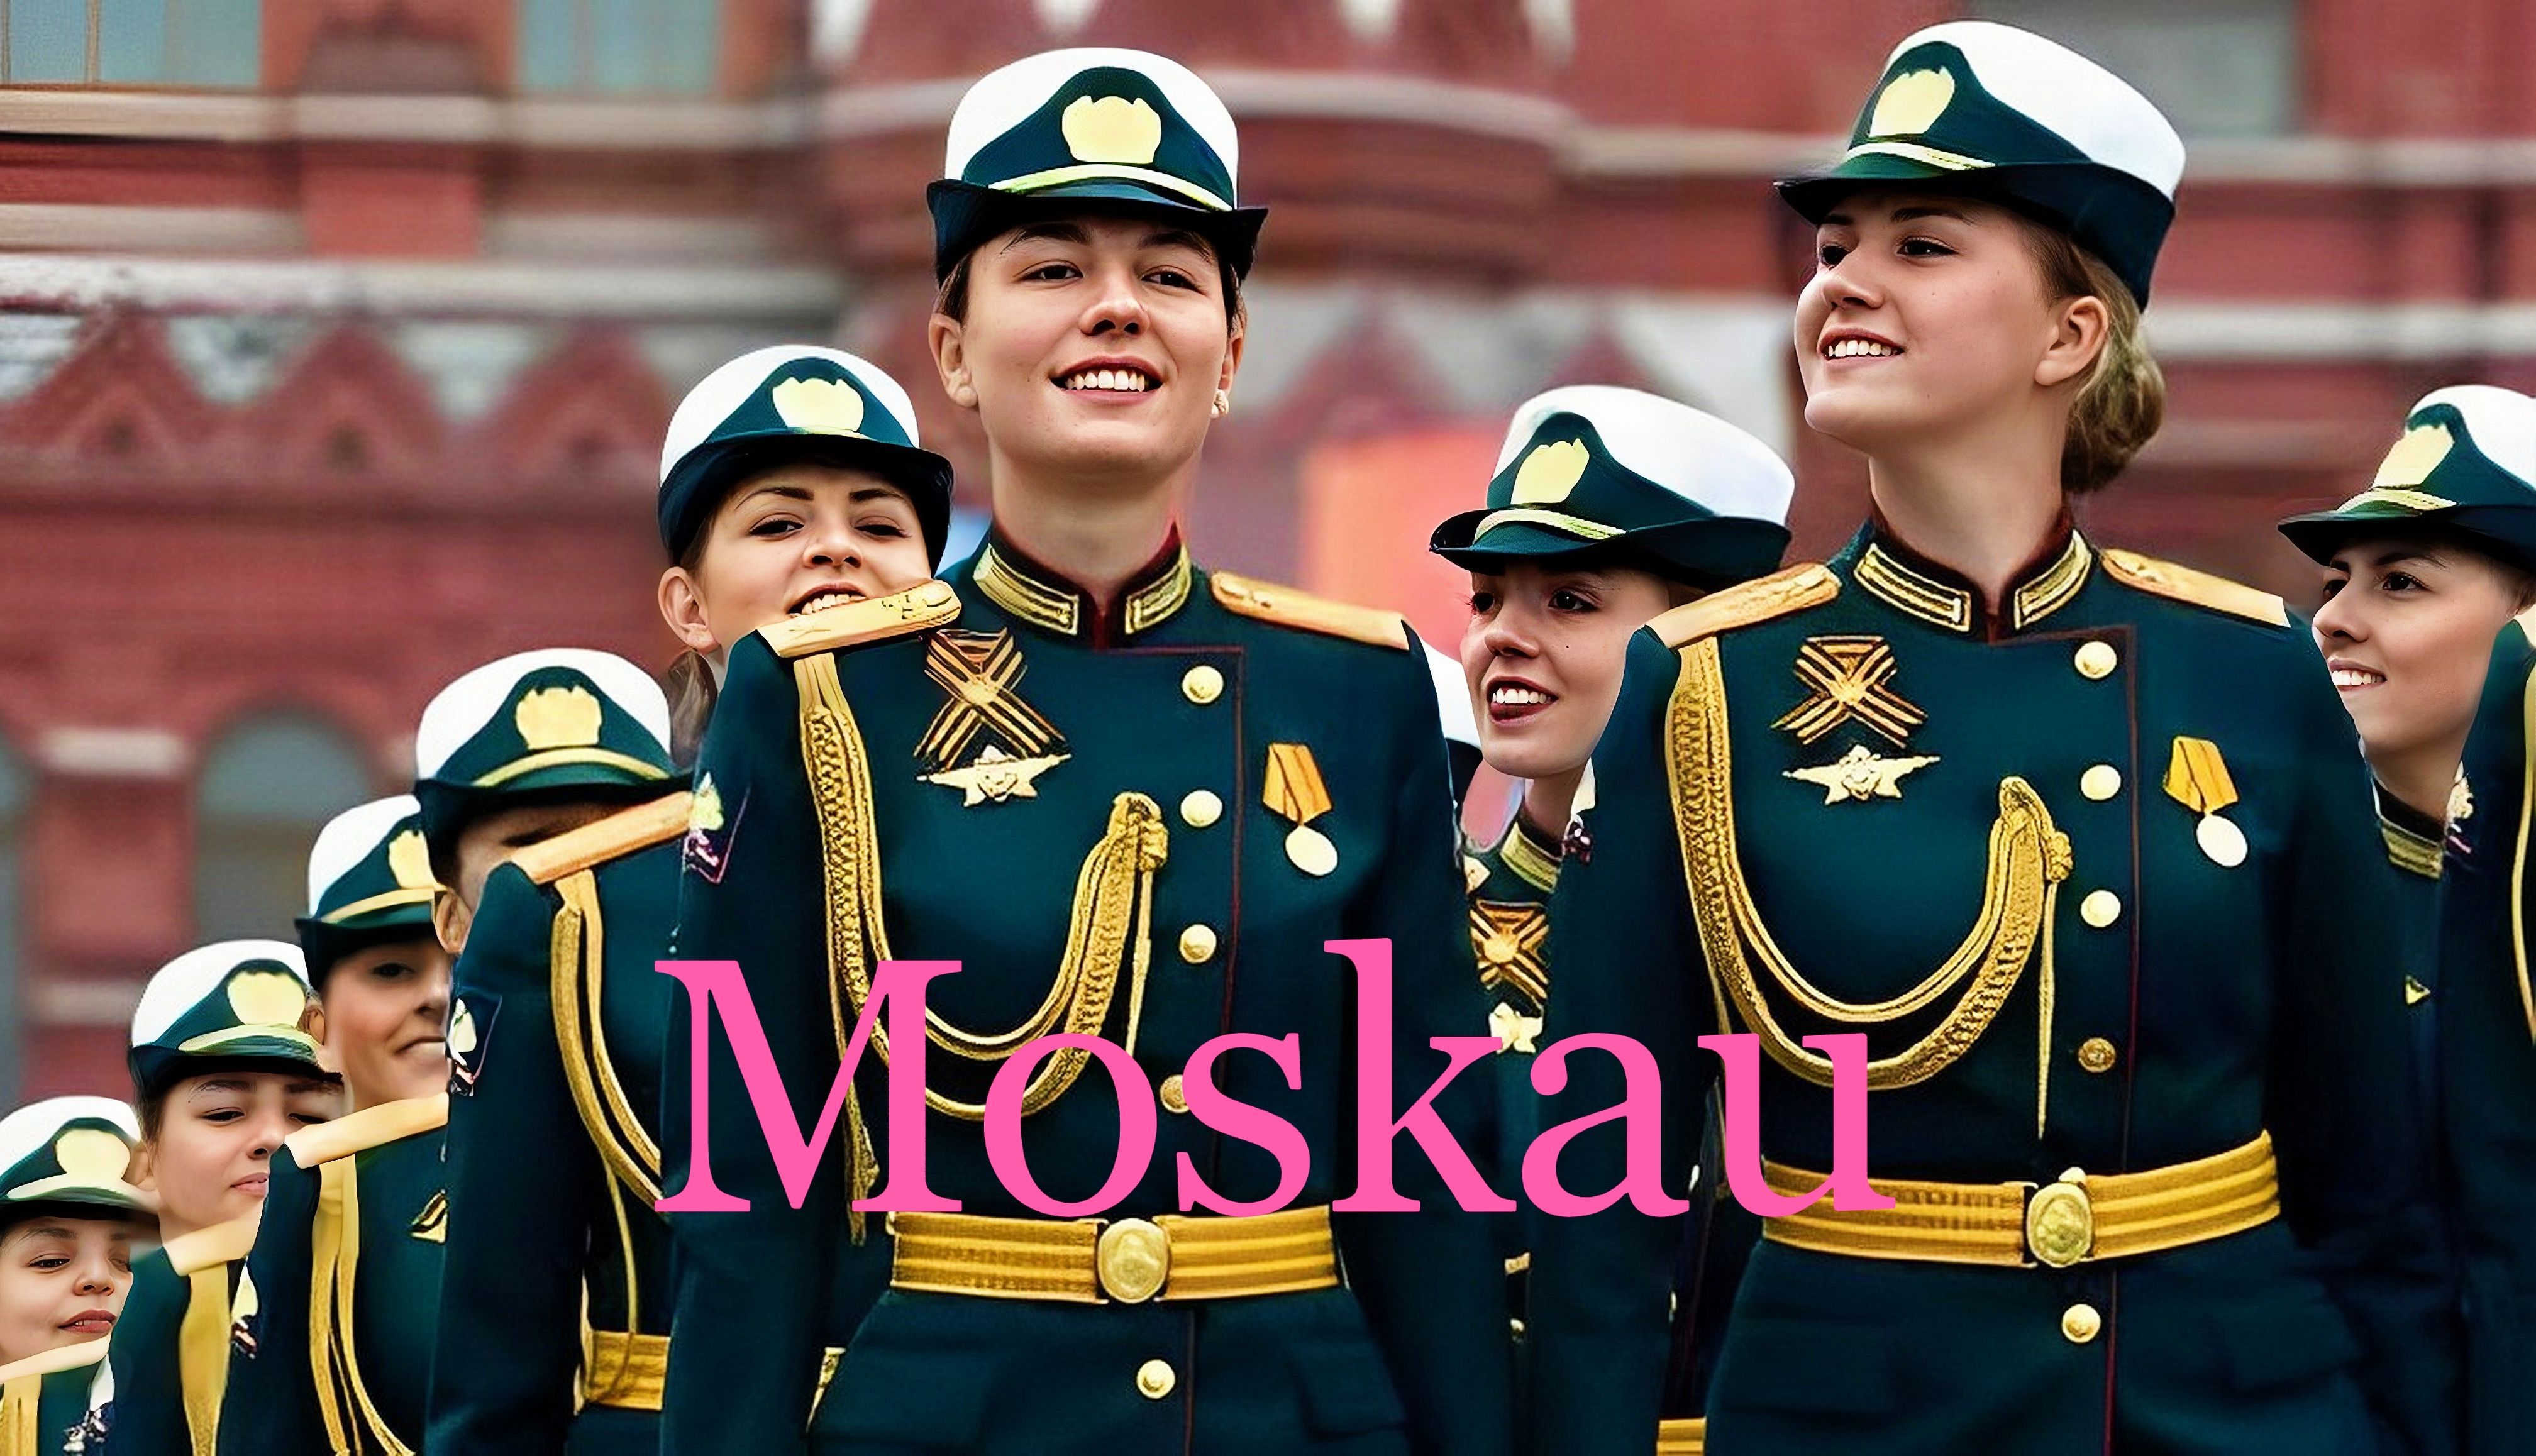 俄罗斯战歌神曲《螺丝刀》（Moskau）莫斯科！